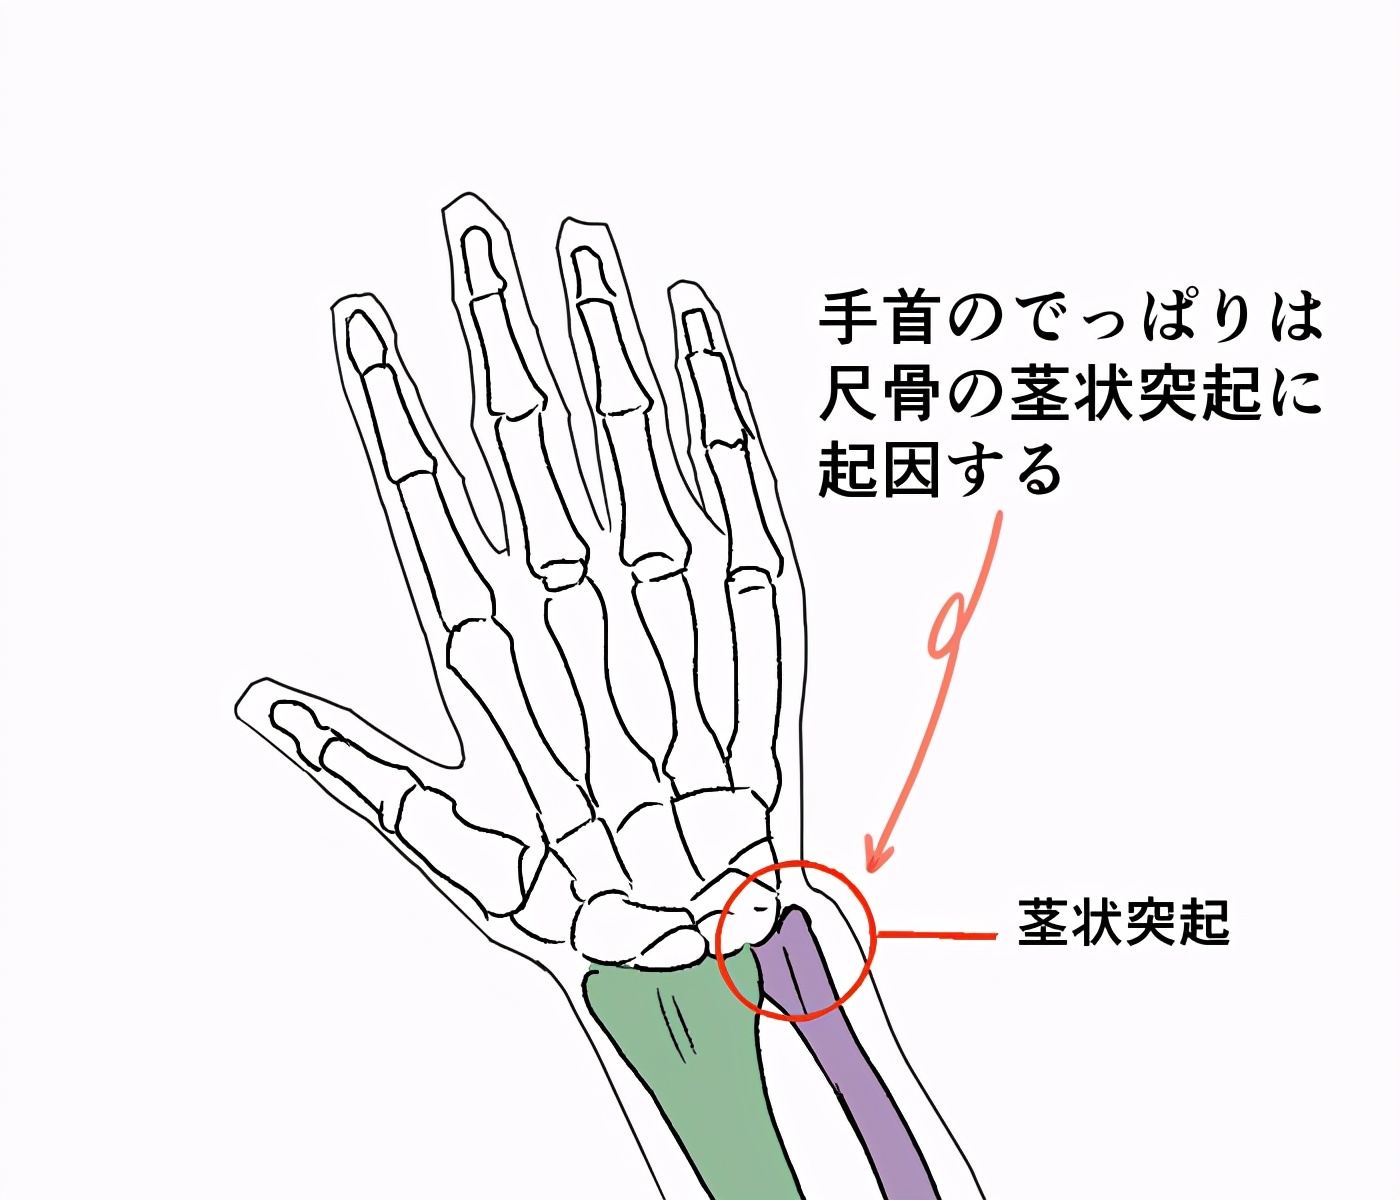 要点: 让我们来了解一下手腕的骨架 尺骨带怎么看 前臂结构–半径的